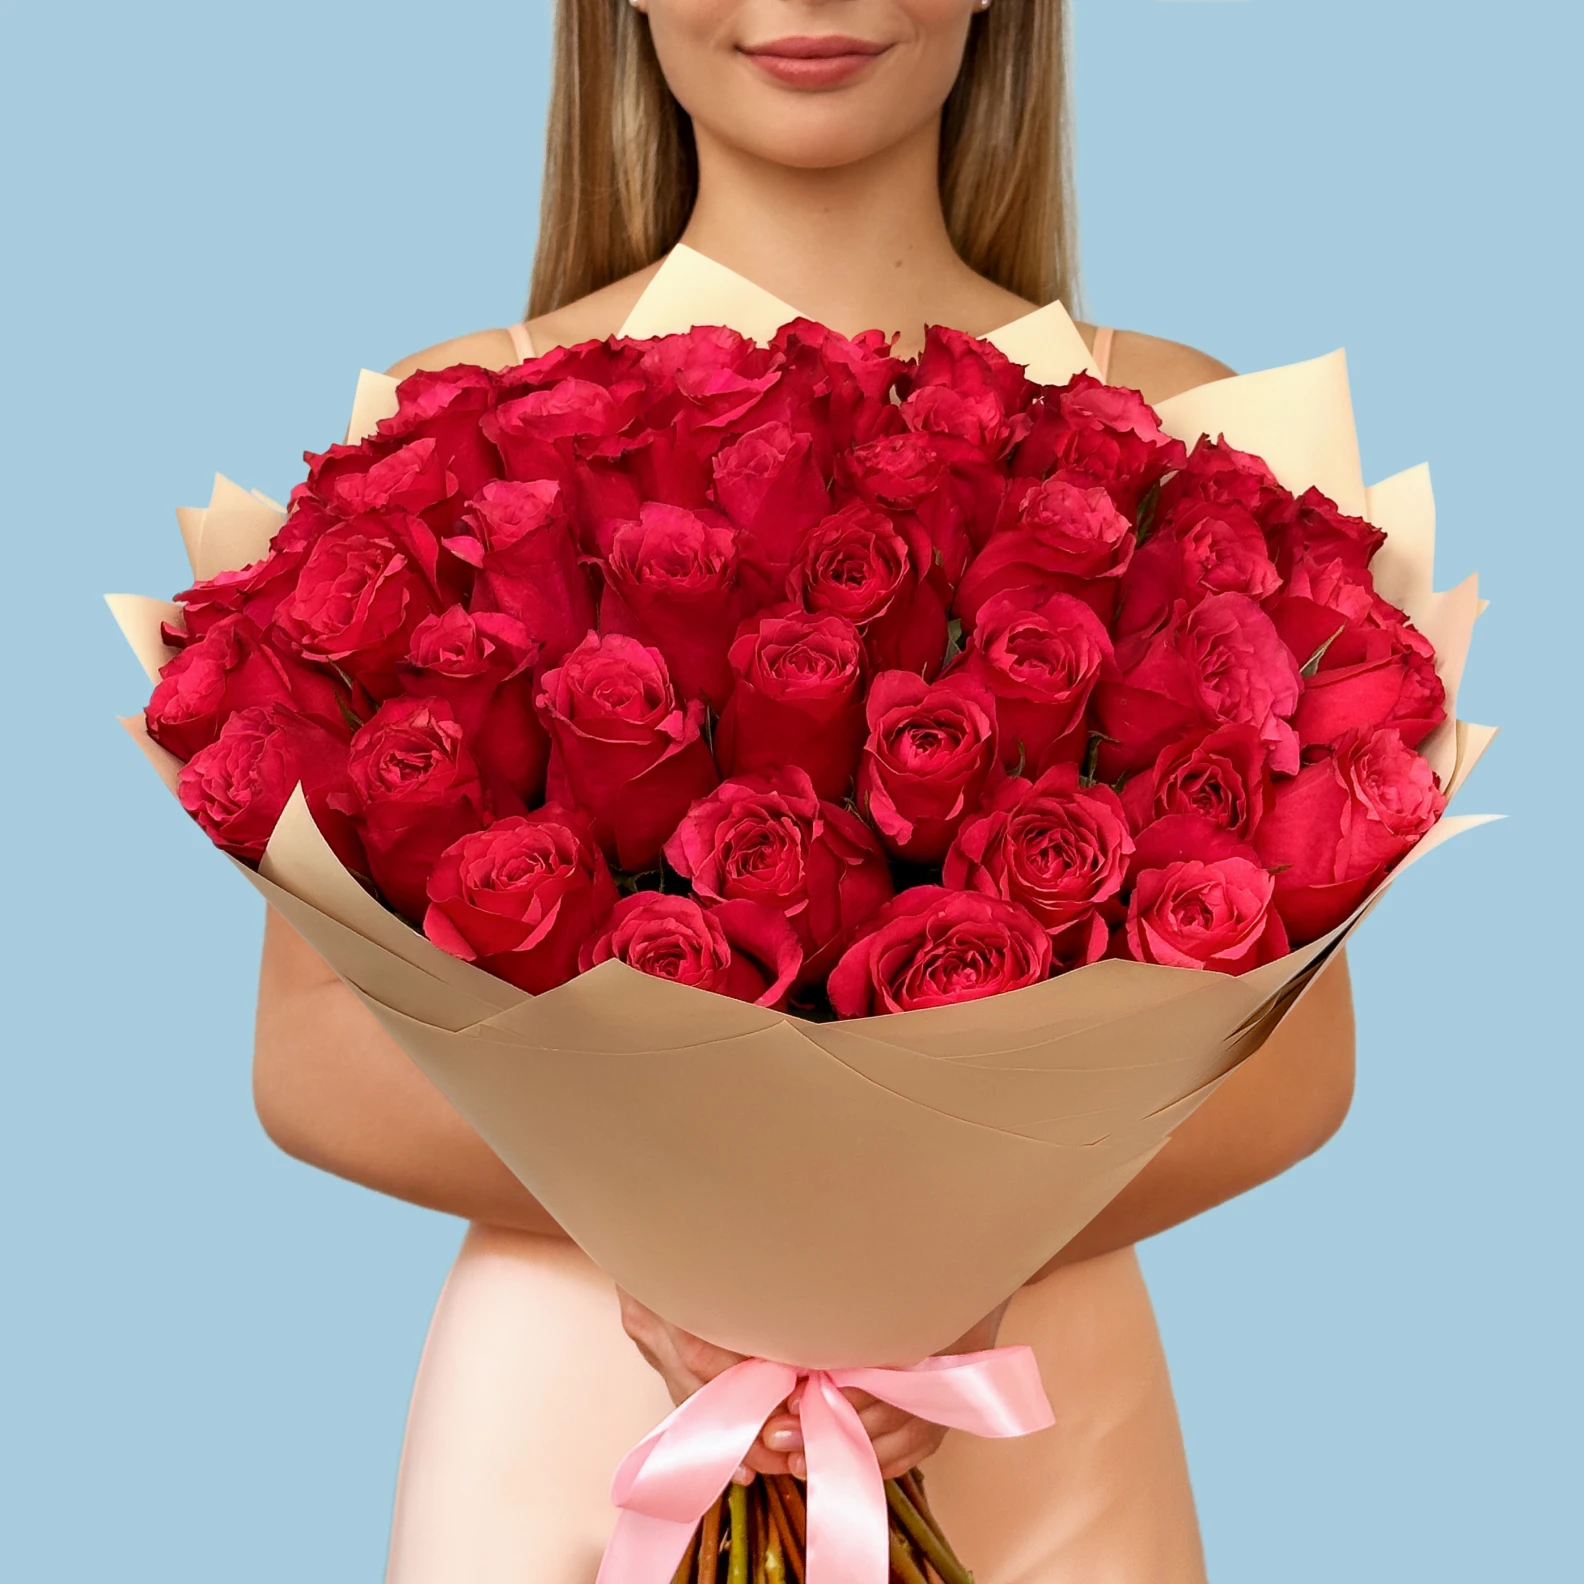 50 Premium Hot Pink Roses - image №1